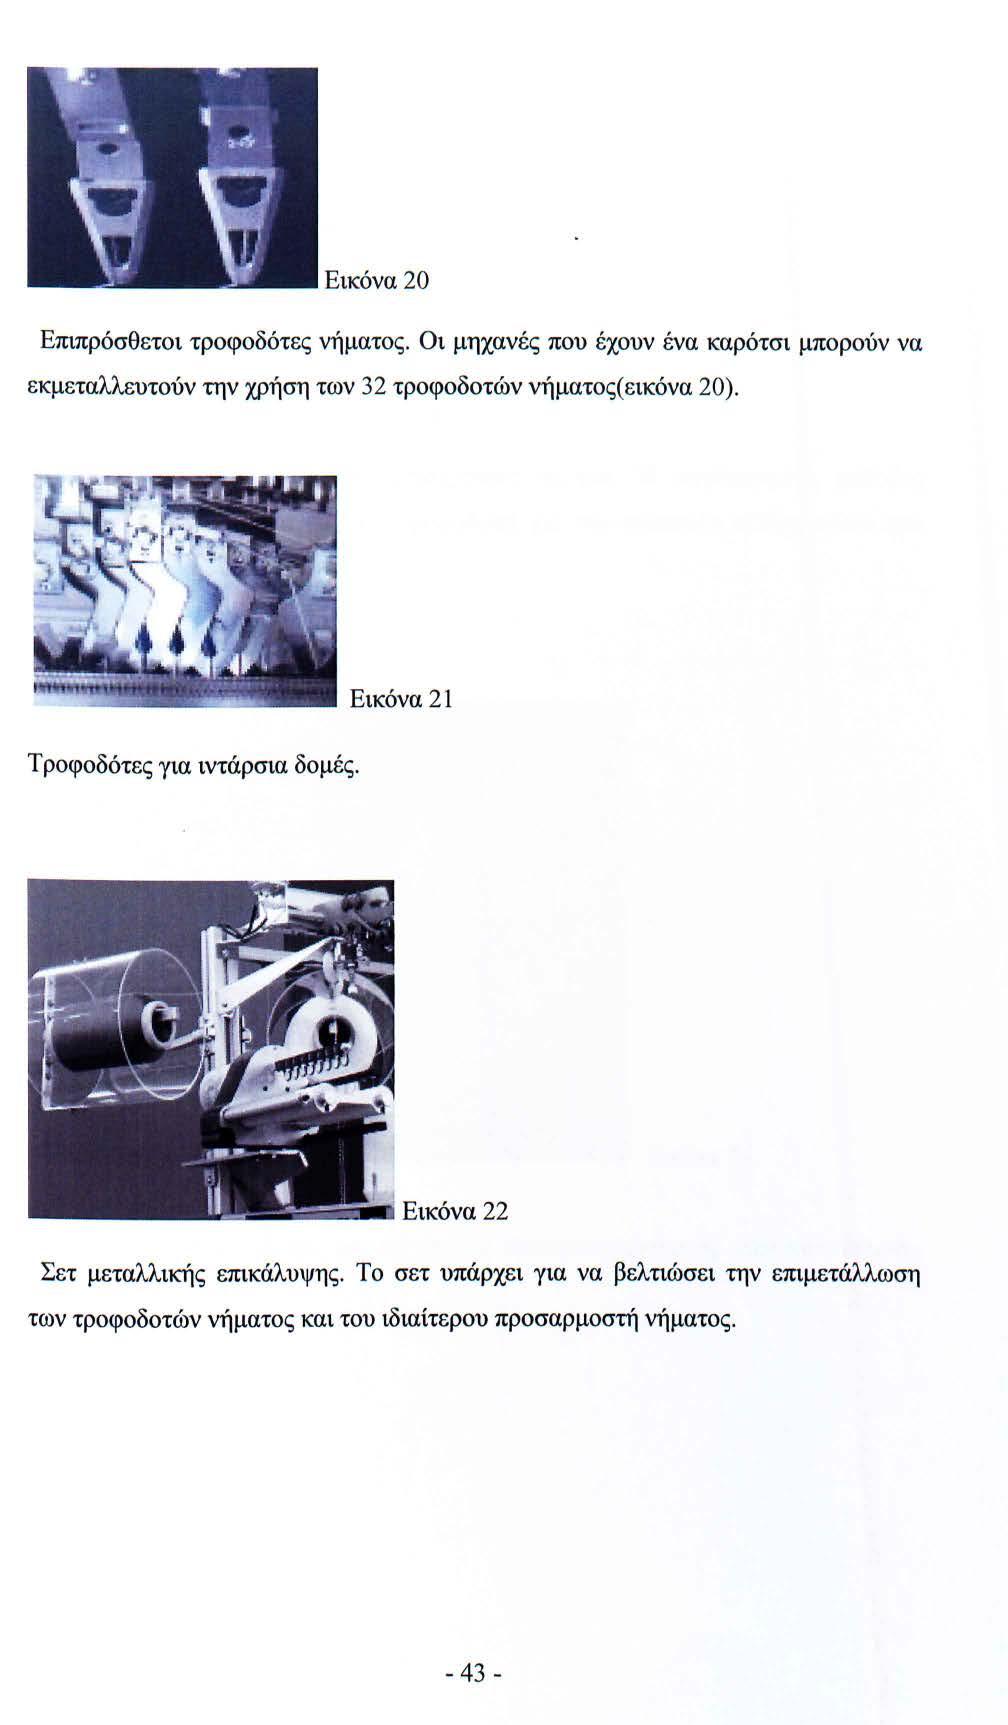 Εικόνα 20 Επιπρόσθετοι τροφοδότες νήματος. Οι μηχανές που έχουν ένα καρότσι μπορούν να εκμεταλλευτούν την χρήση των 32 τροφοδοτών νήματος( εικόνα 20).